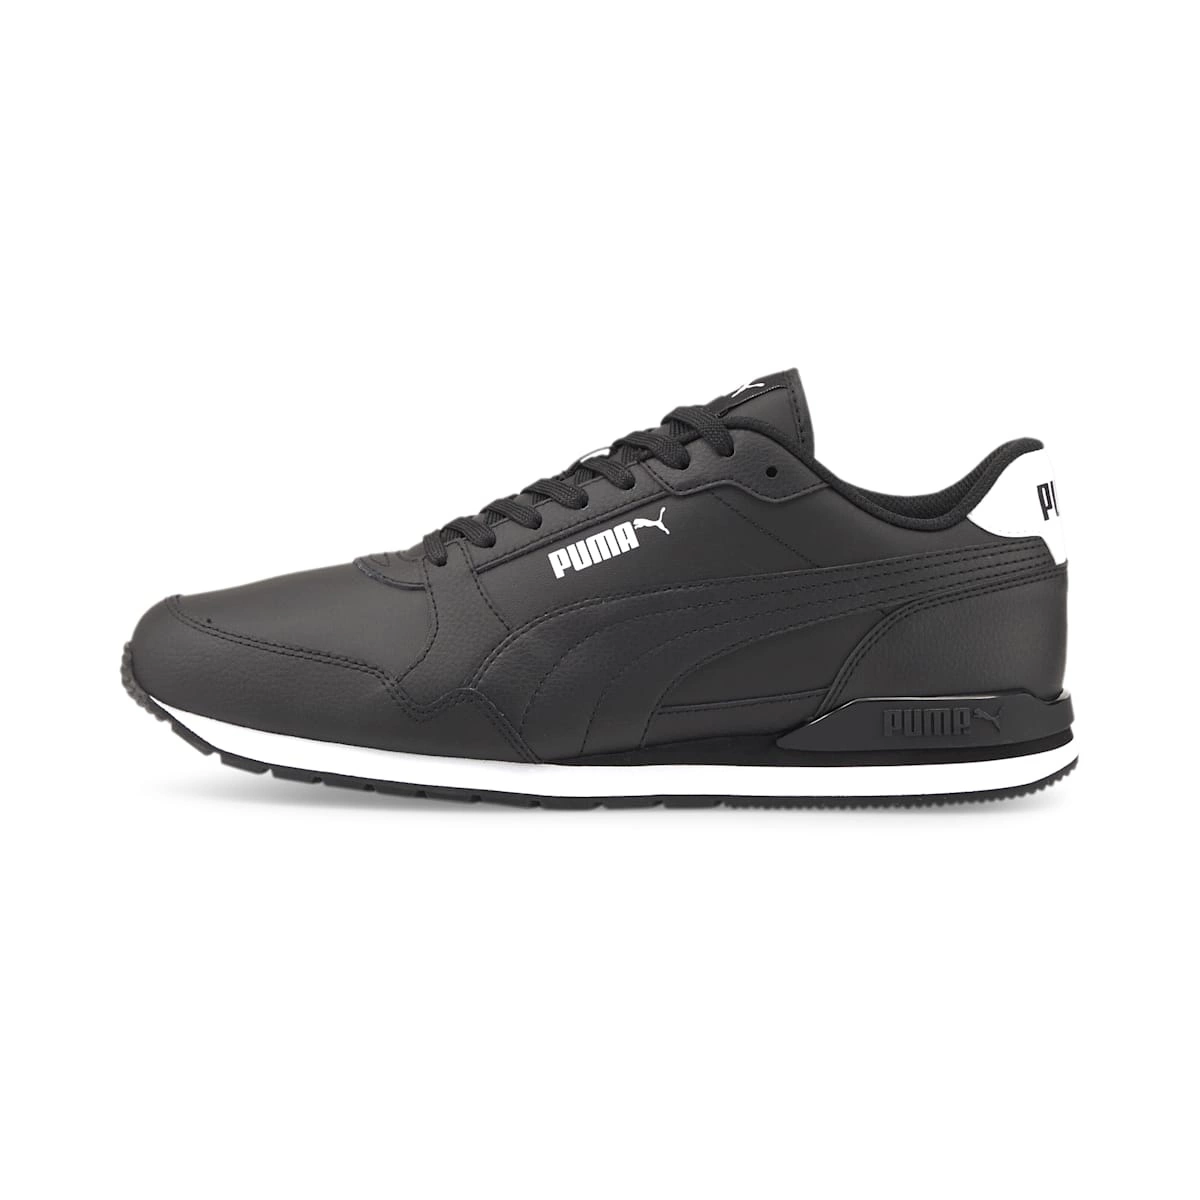 Puma men's ST Runner V3 L 384855 02 athletic shoes - black BLACK